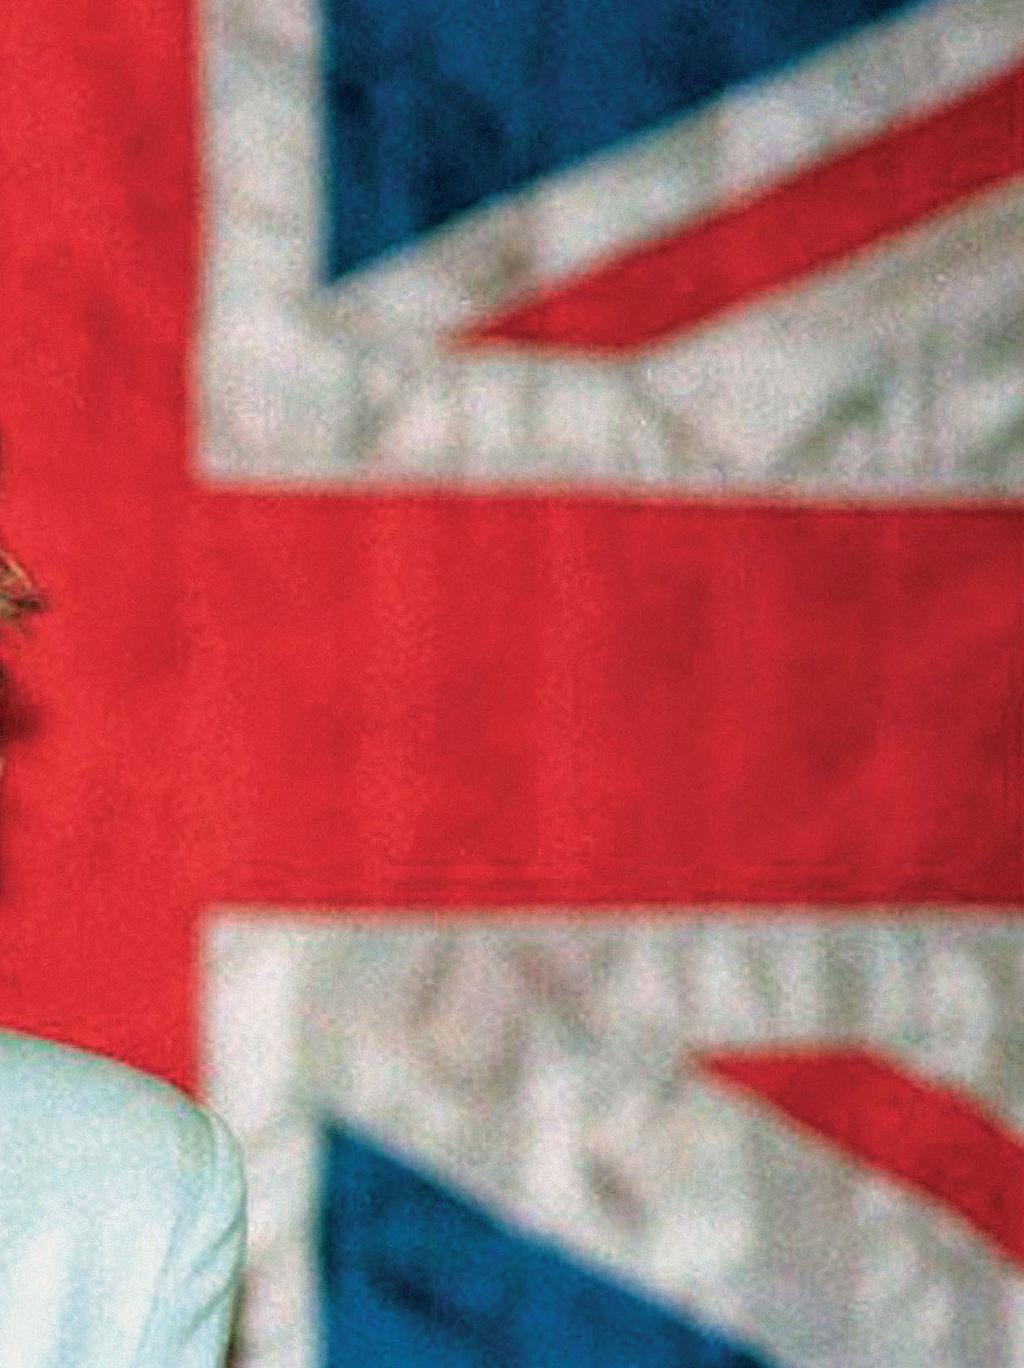 Η Diana σε πρώτο πρόσωπο Ποια ήταν η Lady D; Η πολύκροτη βιογραφία «Diana: Her True Story» επανακυκλοφορεί έπειτα από 25 χρόνια (και δύο δεκαετίες από τον θάνατό της)